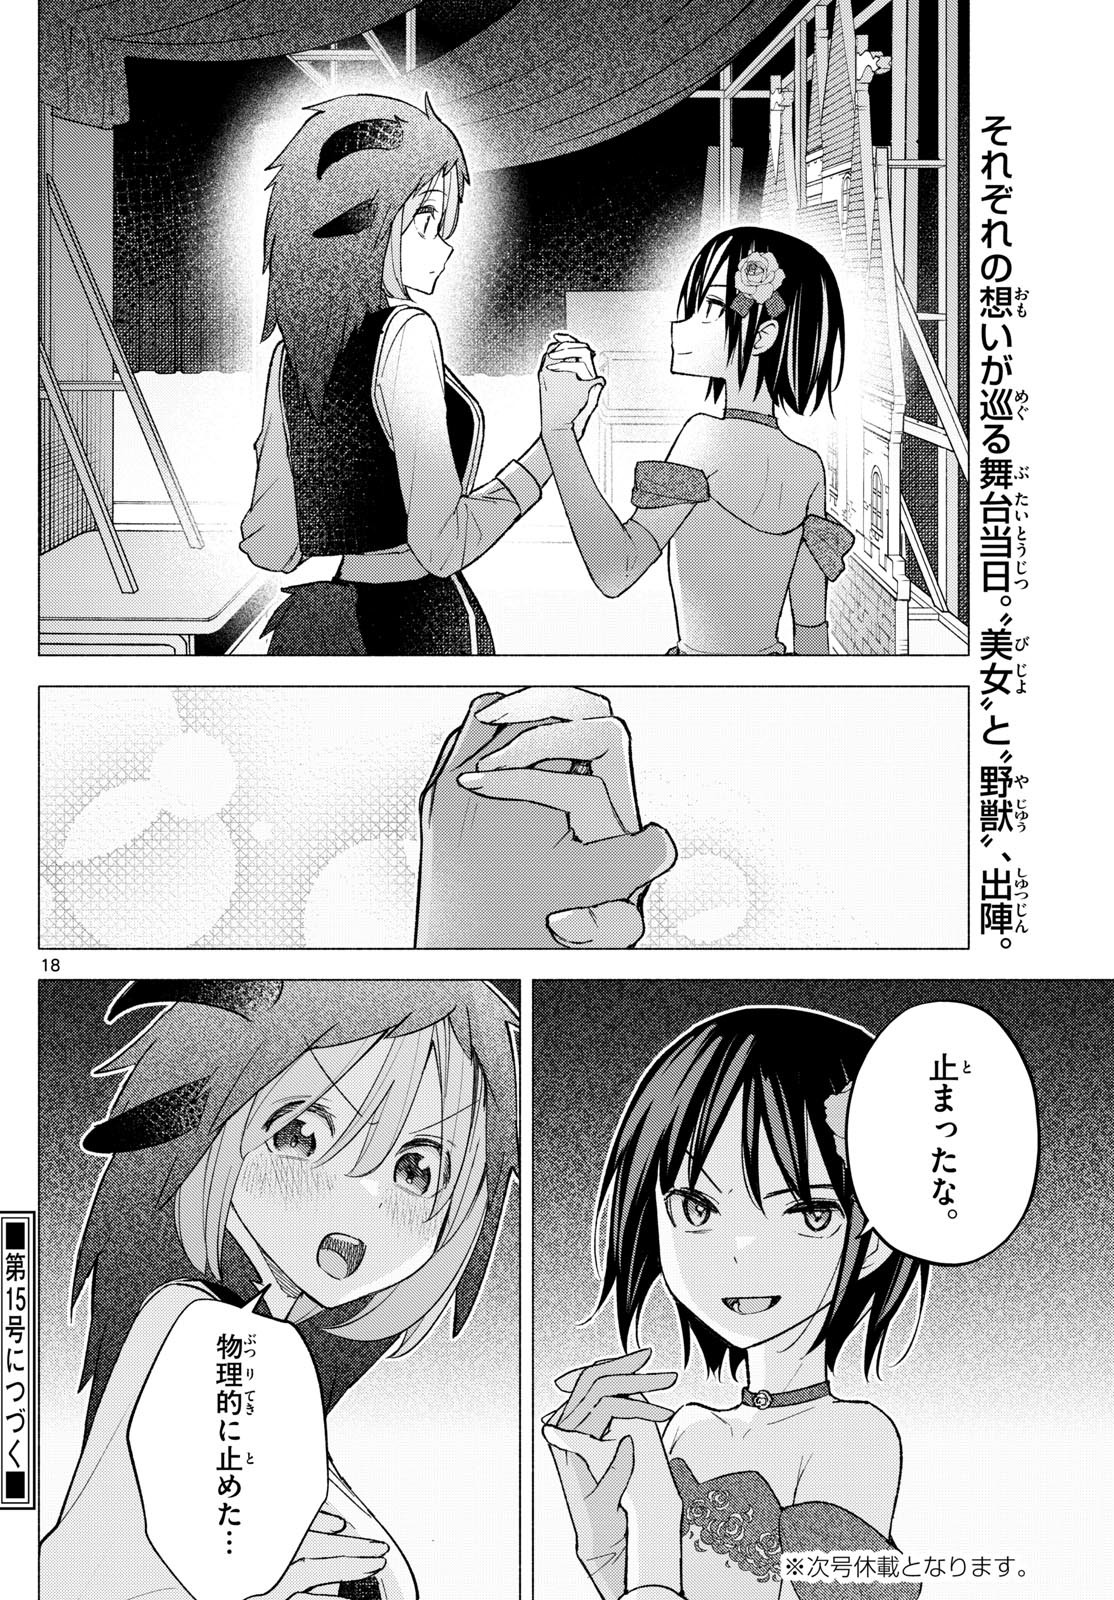 Kimi to Warui Koto ga Shitai - Chapter 063 - Page 18